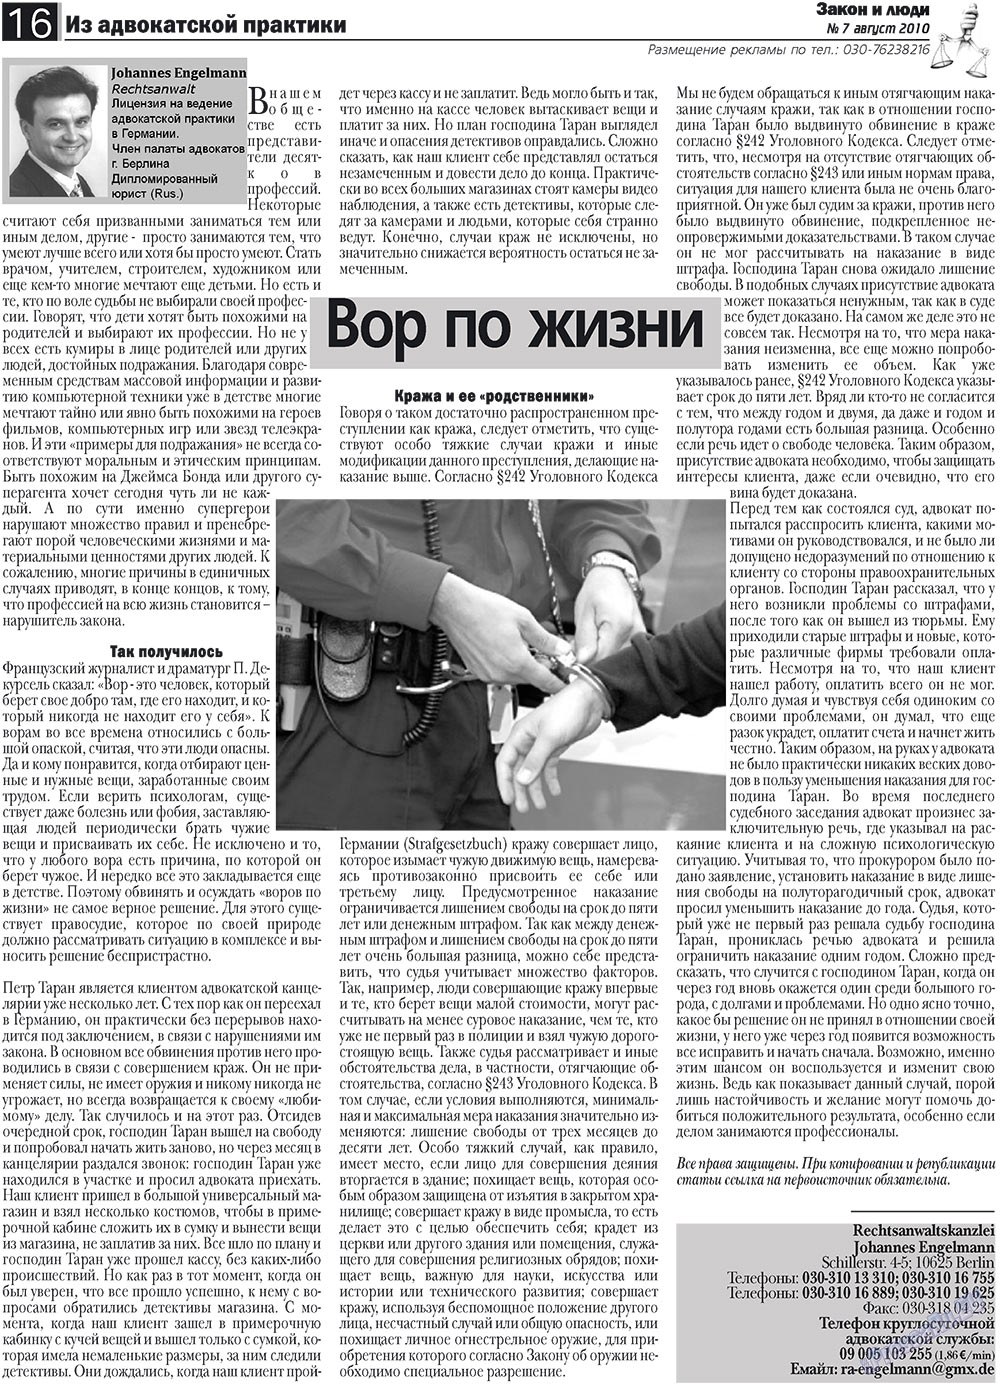 Закон и люди, газета. 2010 №7 стр.16